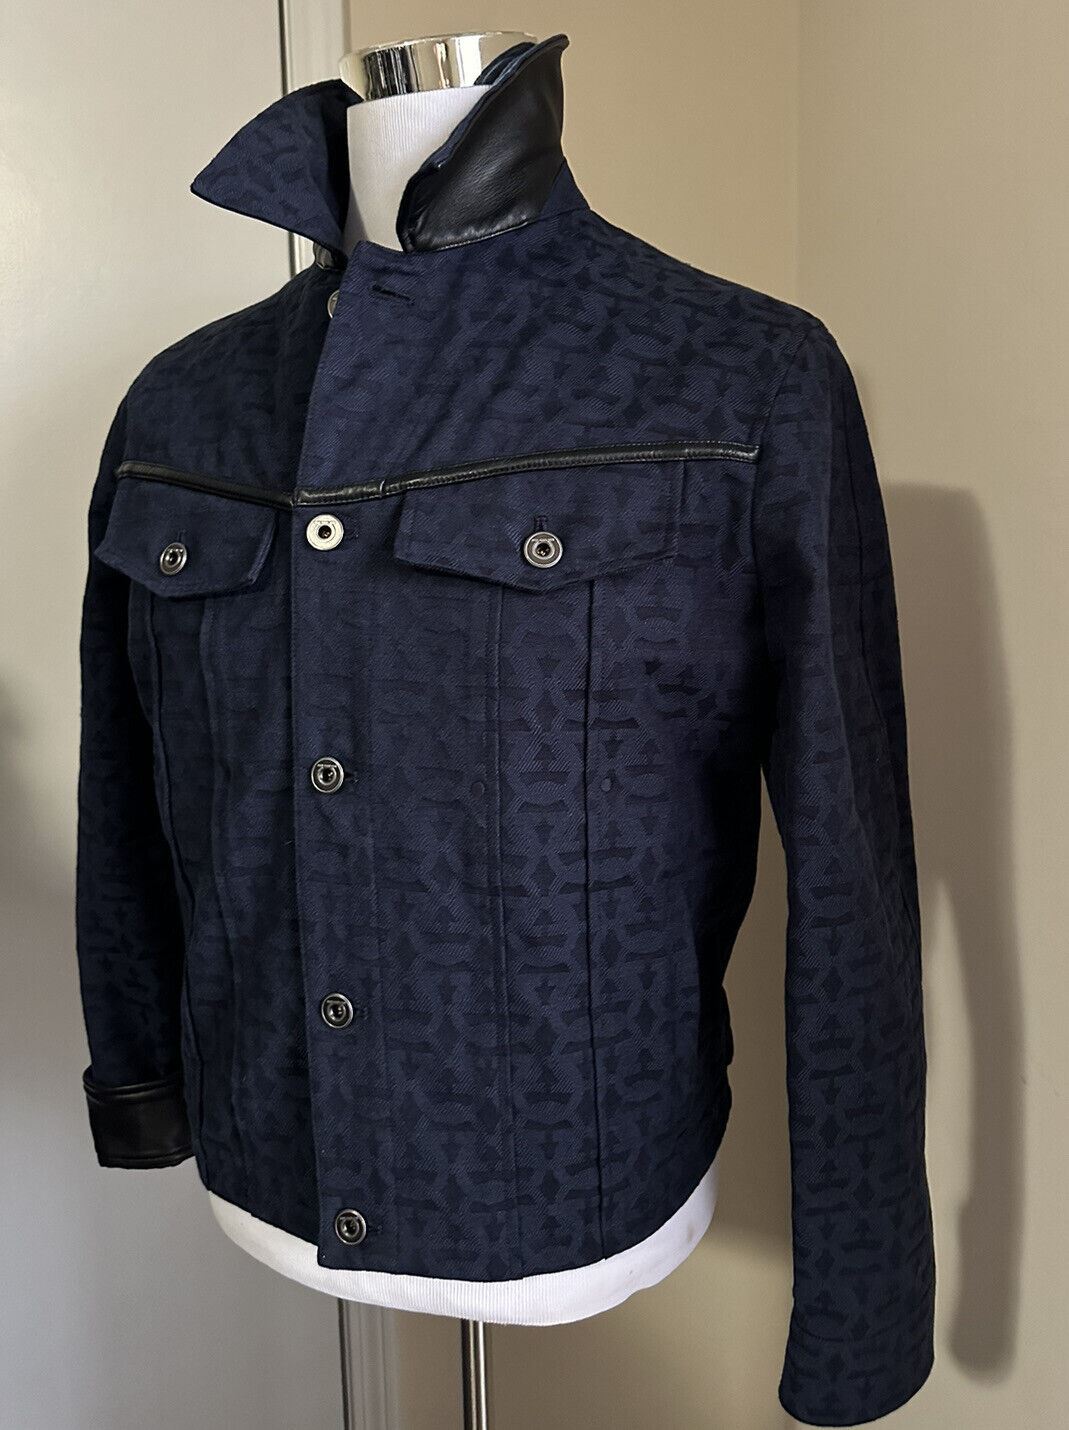 Новая мужская хлопковая/кожаная куртка Salvatore Ferragamo стоимостью 1490 долларов США, черная/синяя, 38 США/48 ЕС